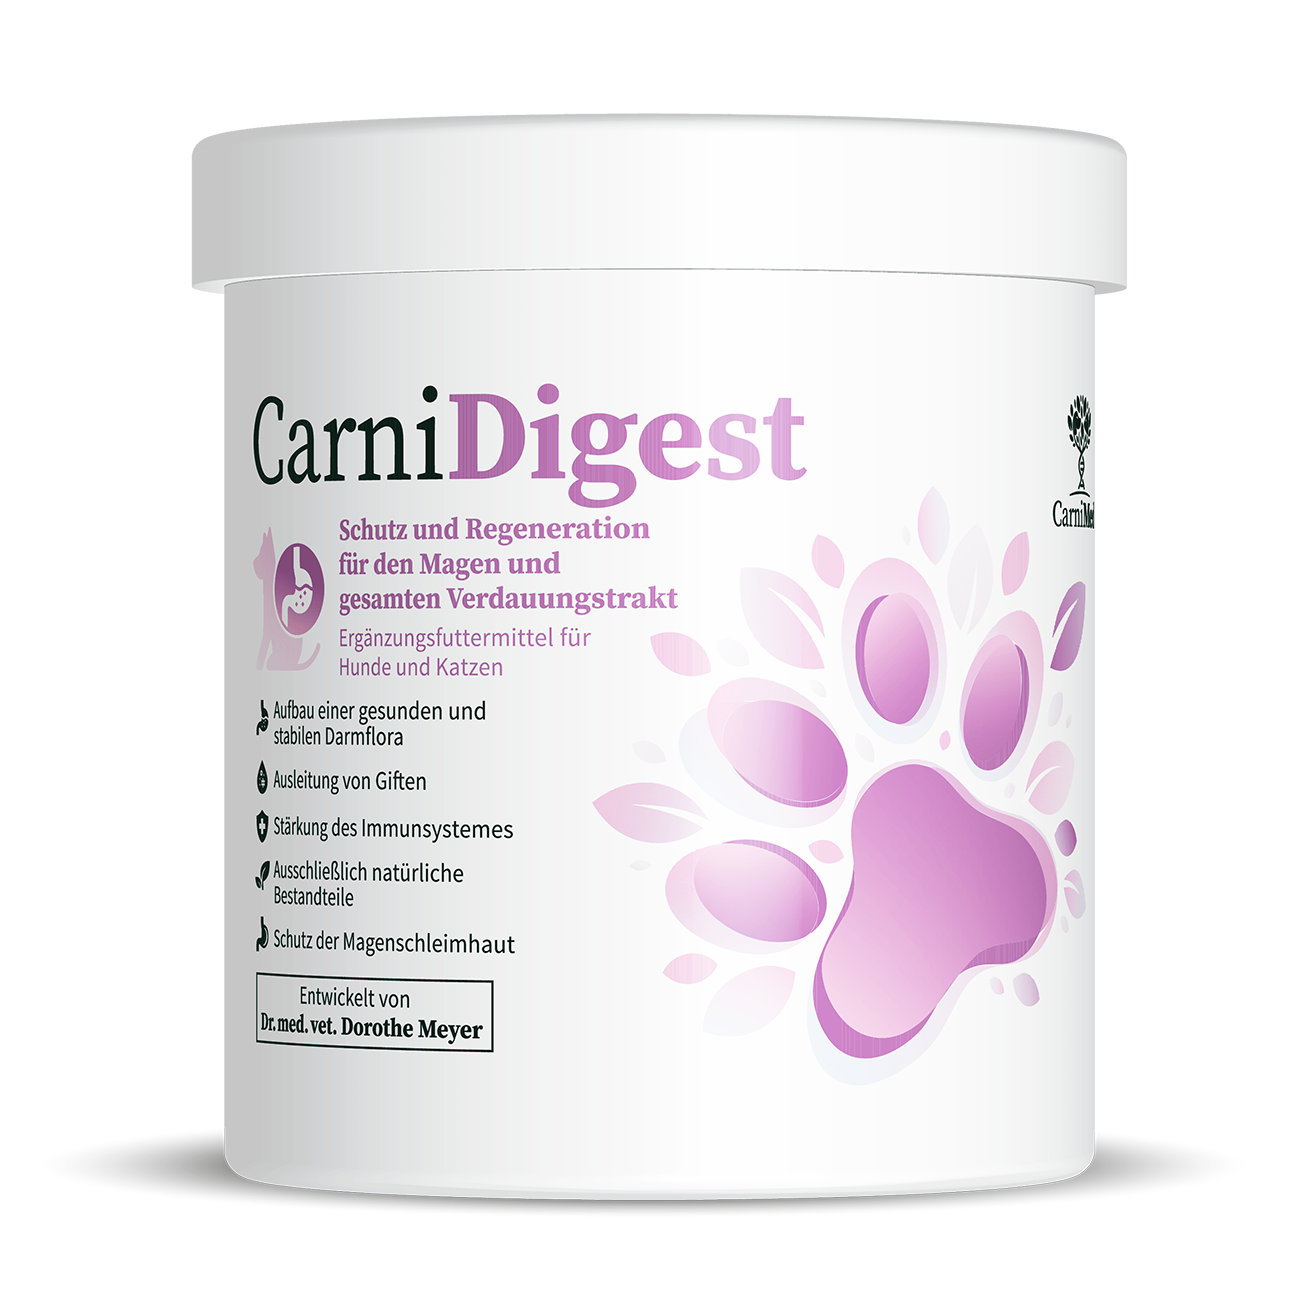 CarniDigest - Rundumversorgung für den Magen-Darm-Trakt